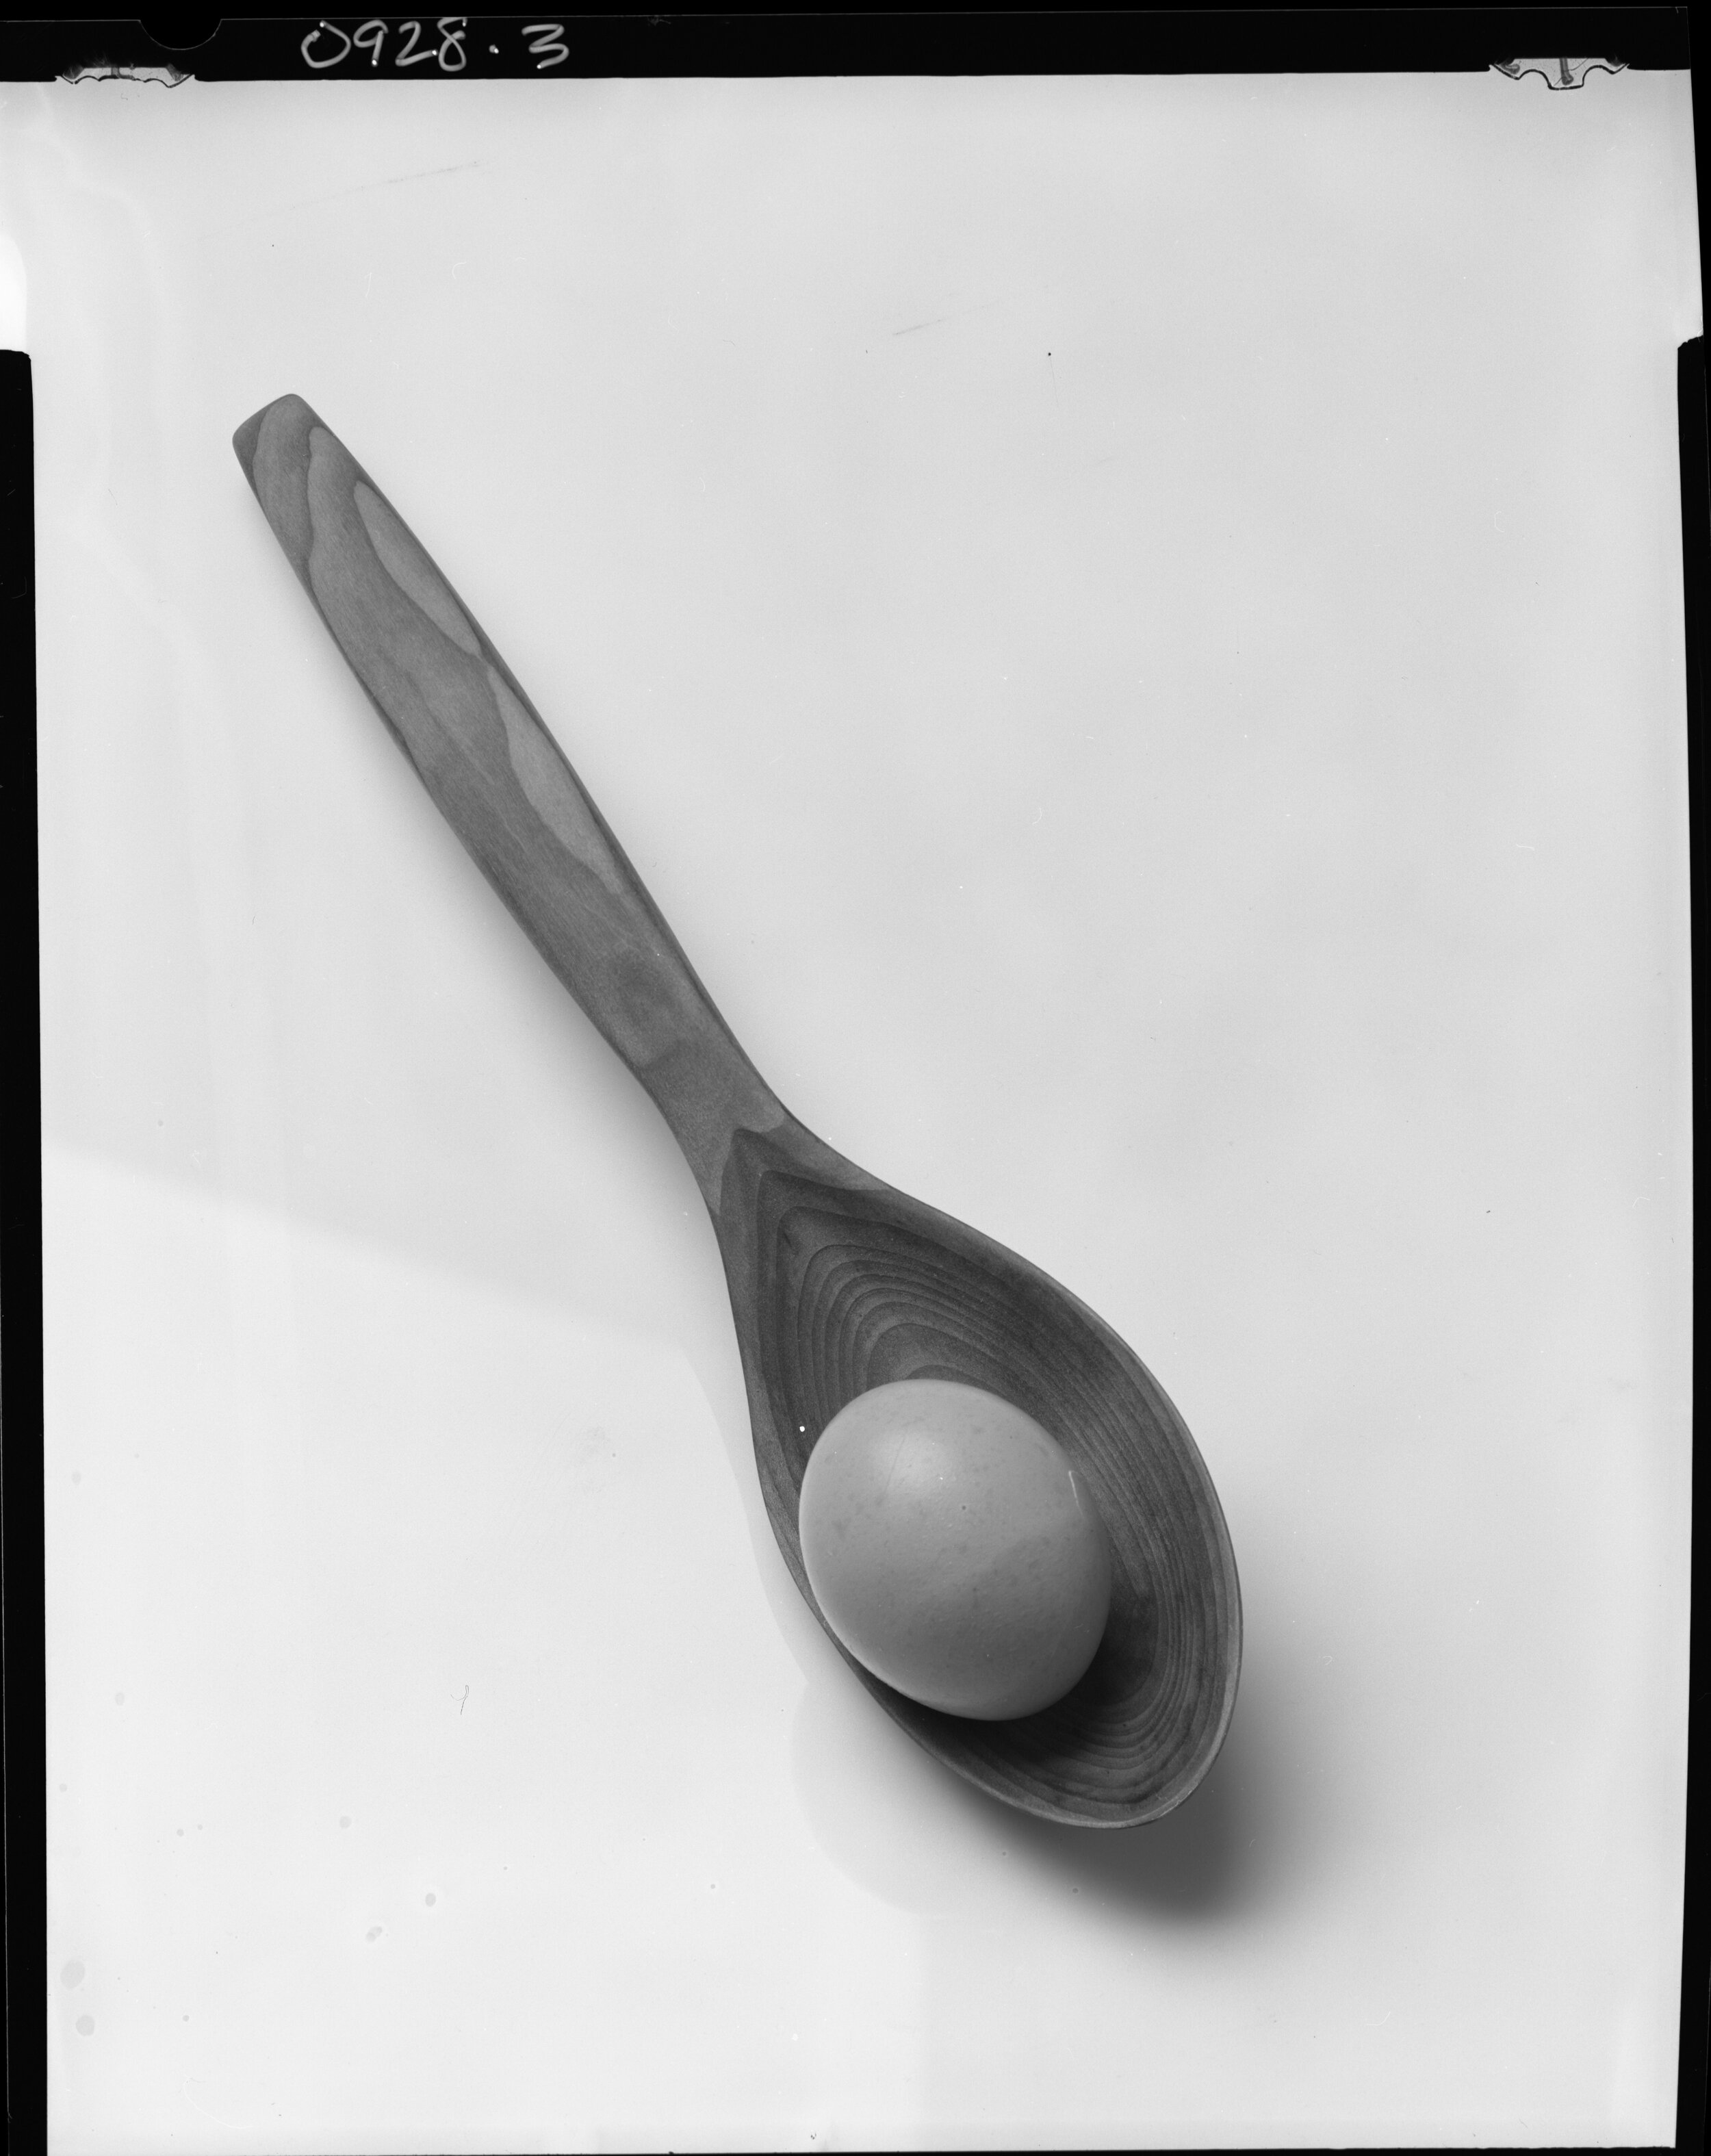    Handmade spoon, henmade egg   